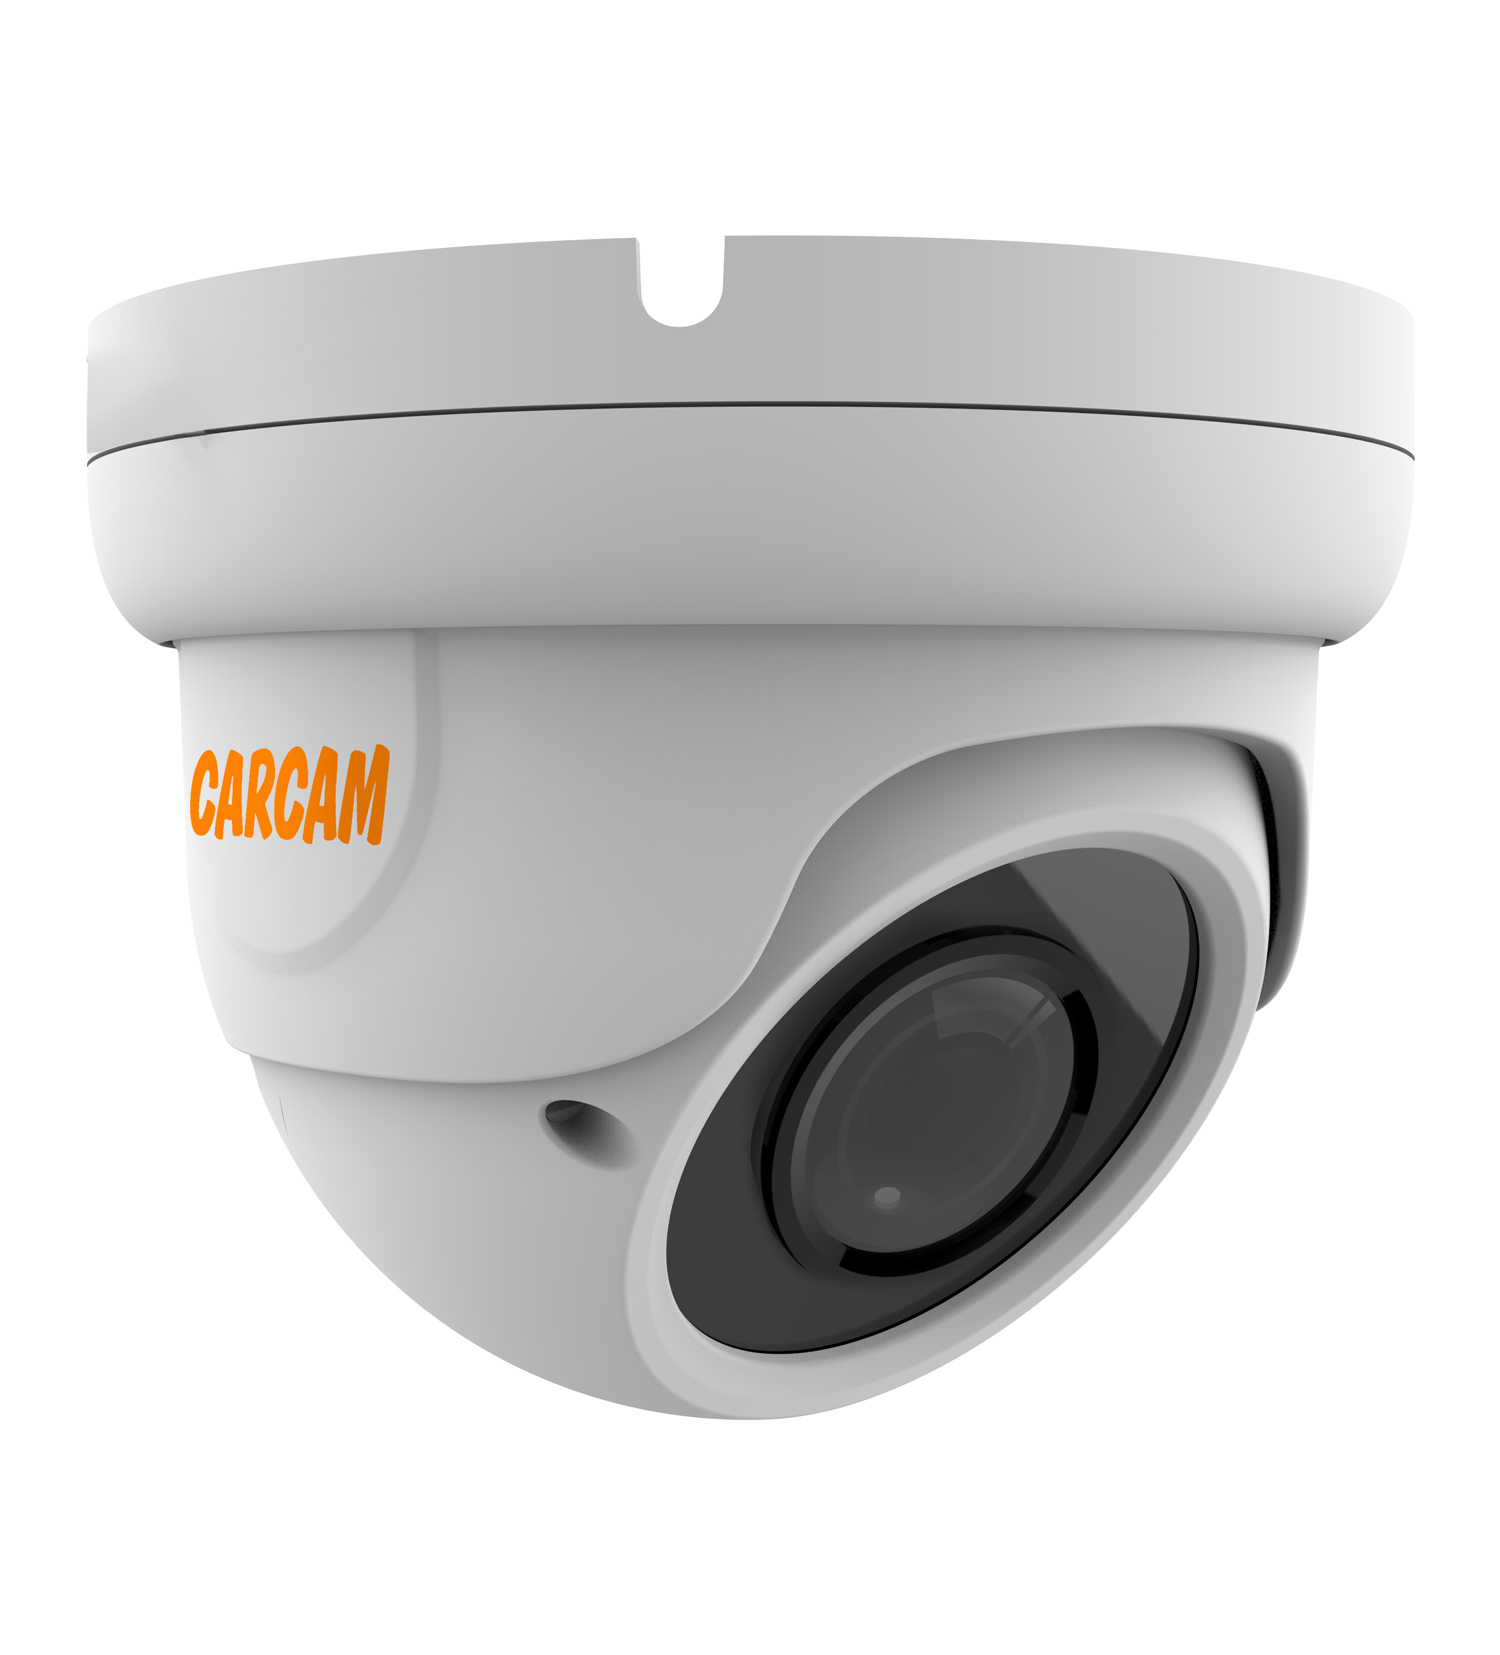 Купольная AHD-камера CARCAM 5MP Dome HD Camera 5041 (2.8-12mm) купольная ip камера carcam 2mp dome ip camera 2076 2 8 12mm